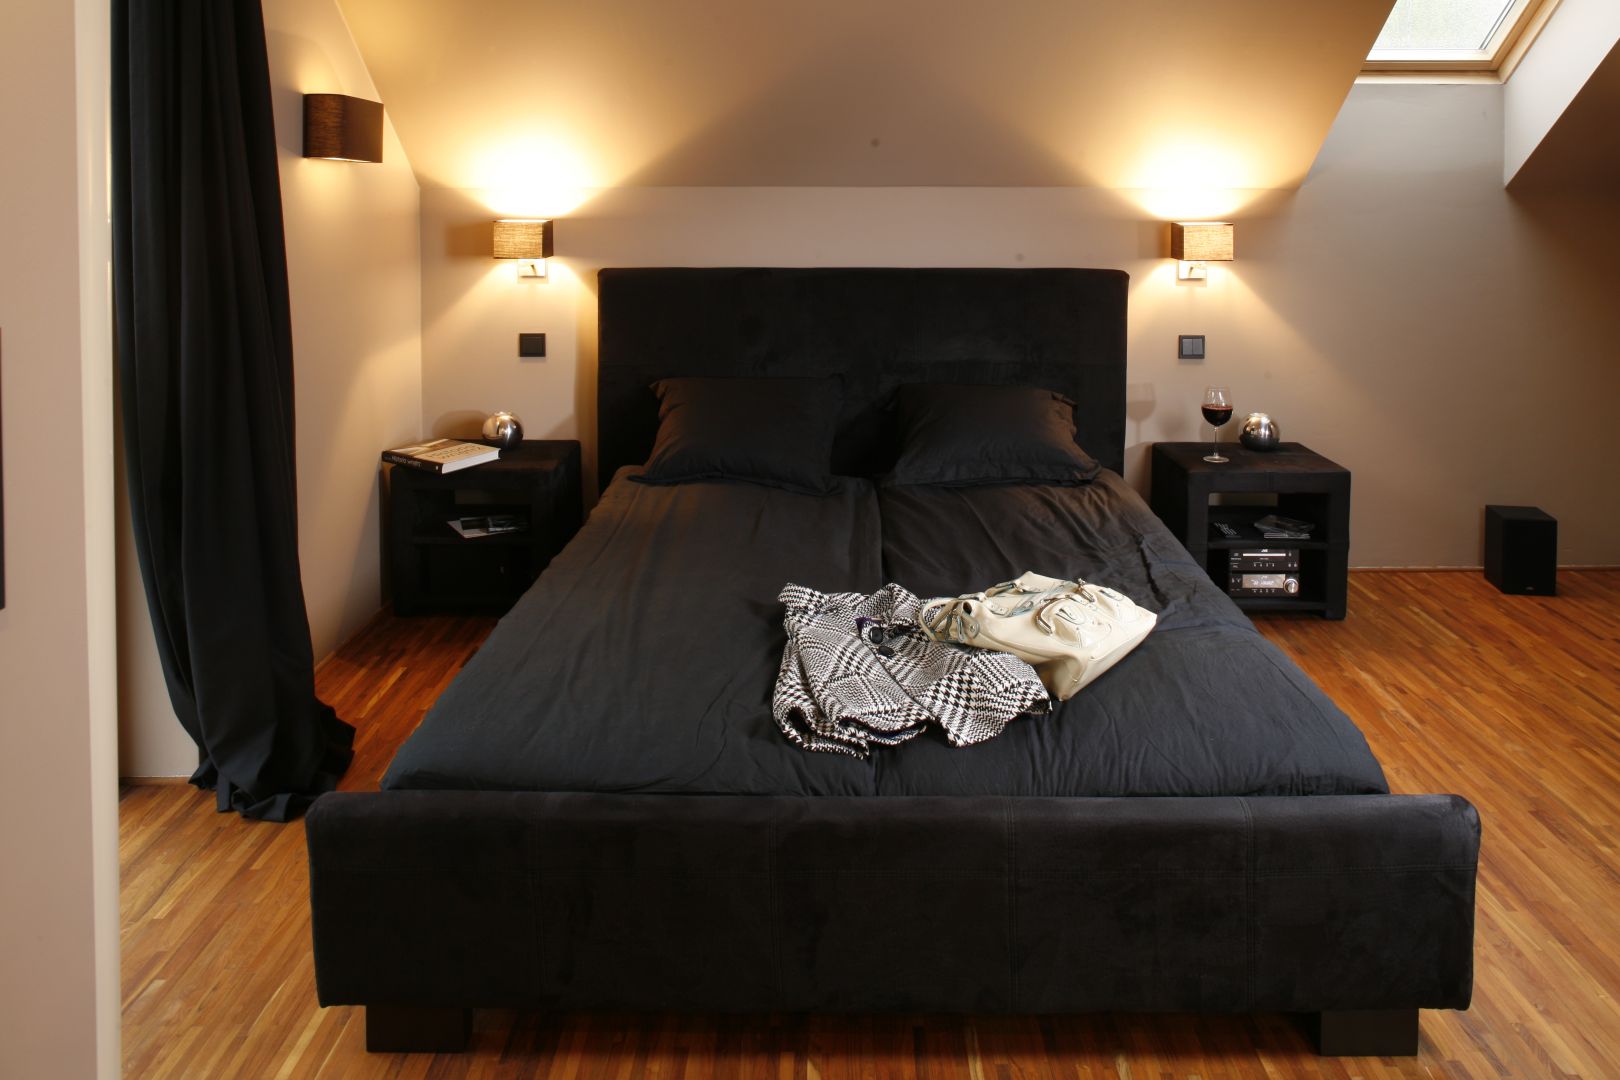 Czarne, tapicerowane łóżko z miękkim zagłówkiem to niebanalny element tego wnętrza. Sprawia, że sypialnia zachęca do wypoczynku. Projekt: Monika i Adam Bronikowscy. Fot. Bartosz Jarosz 